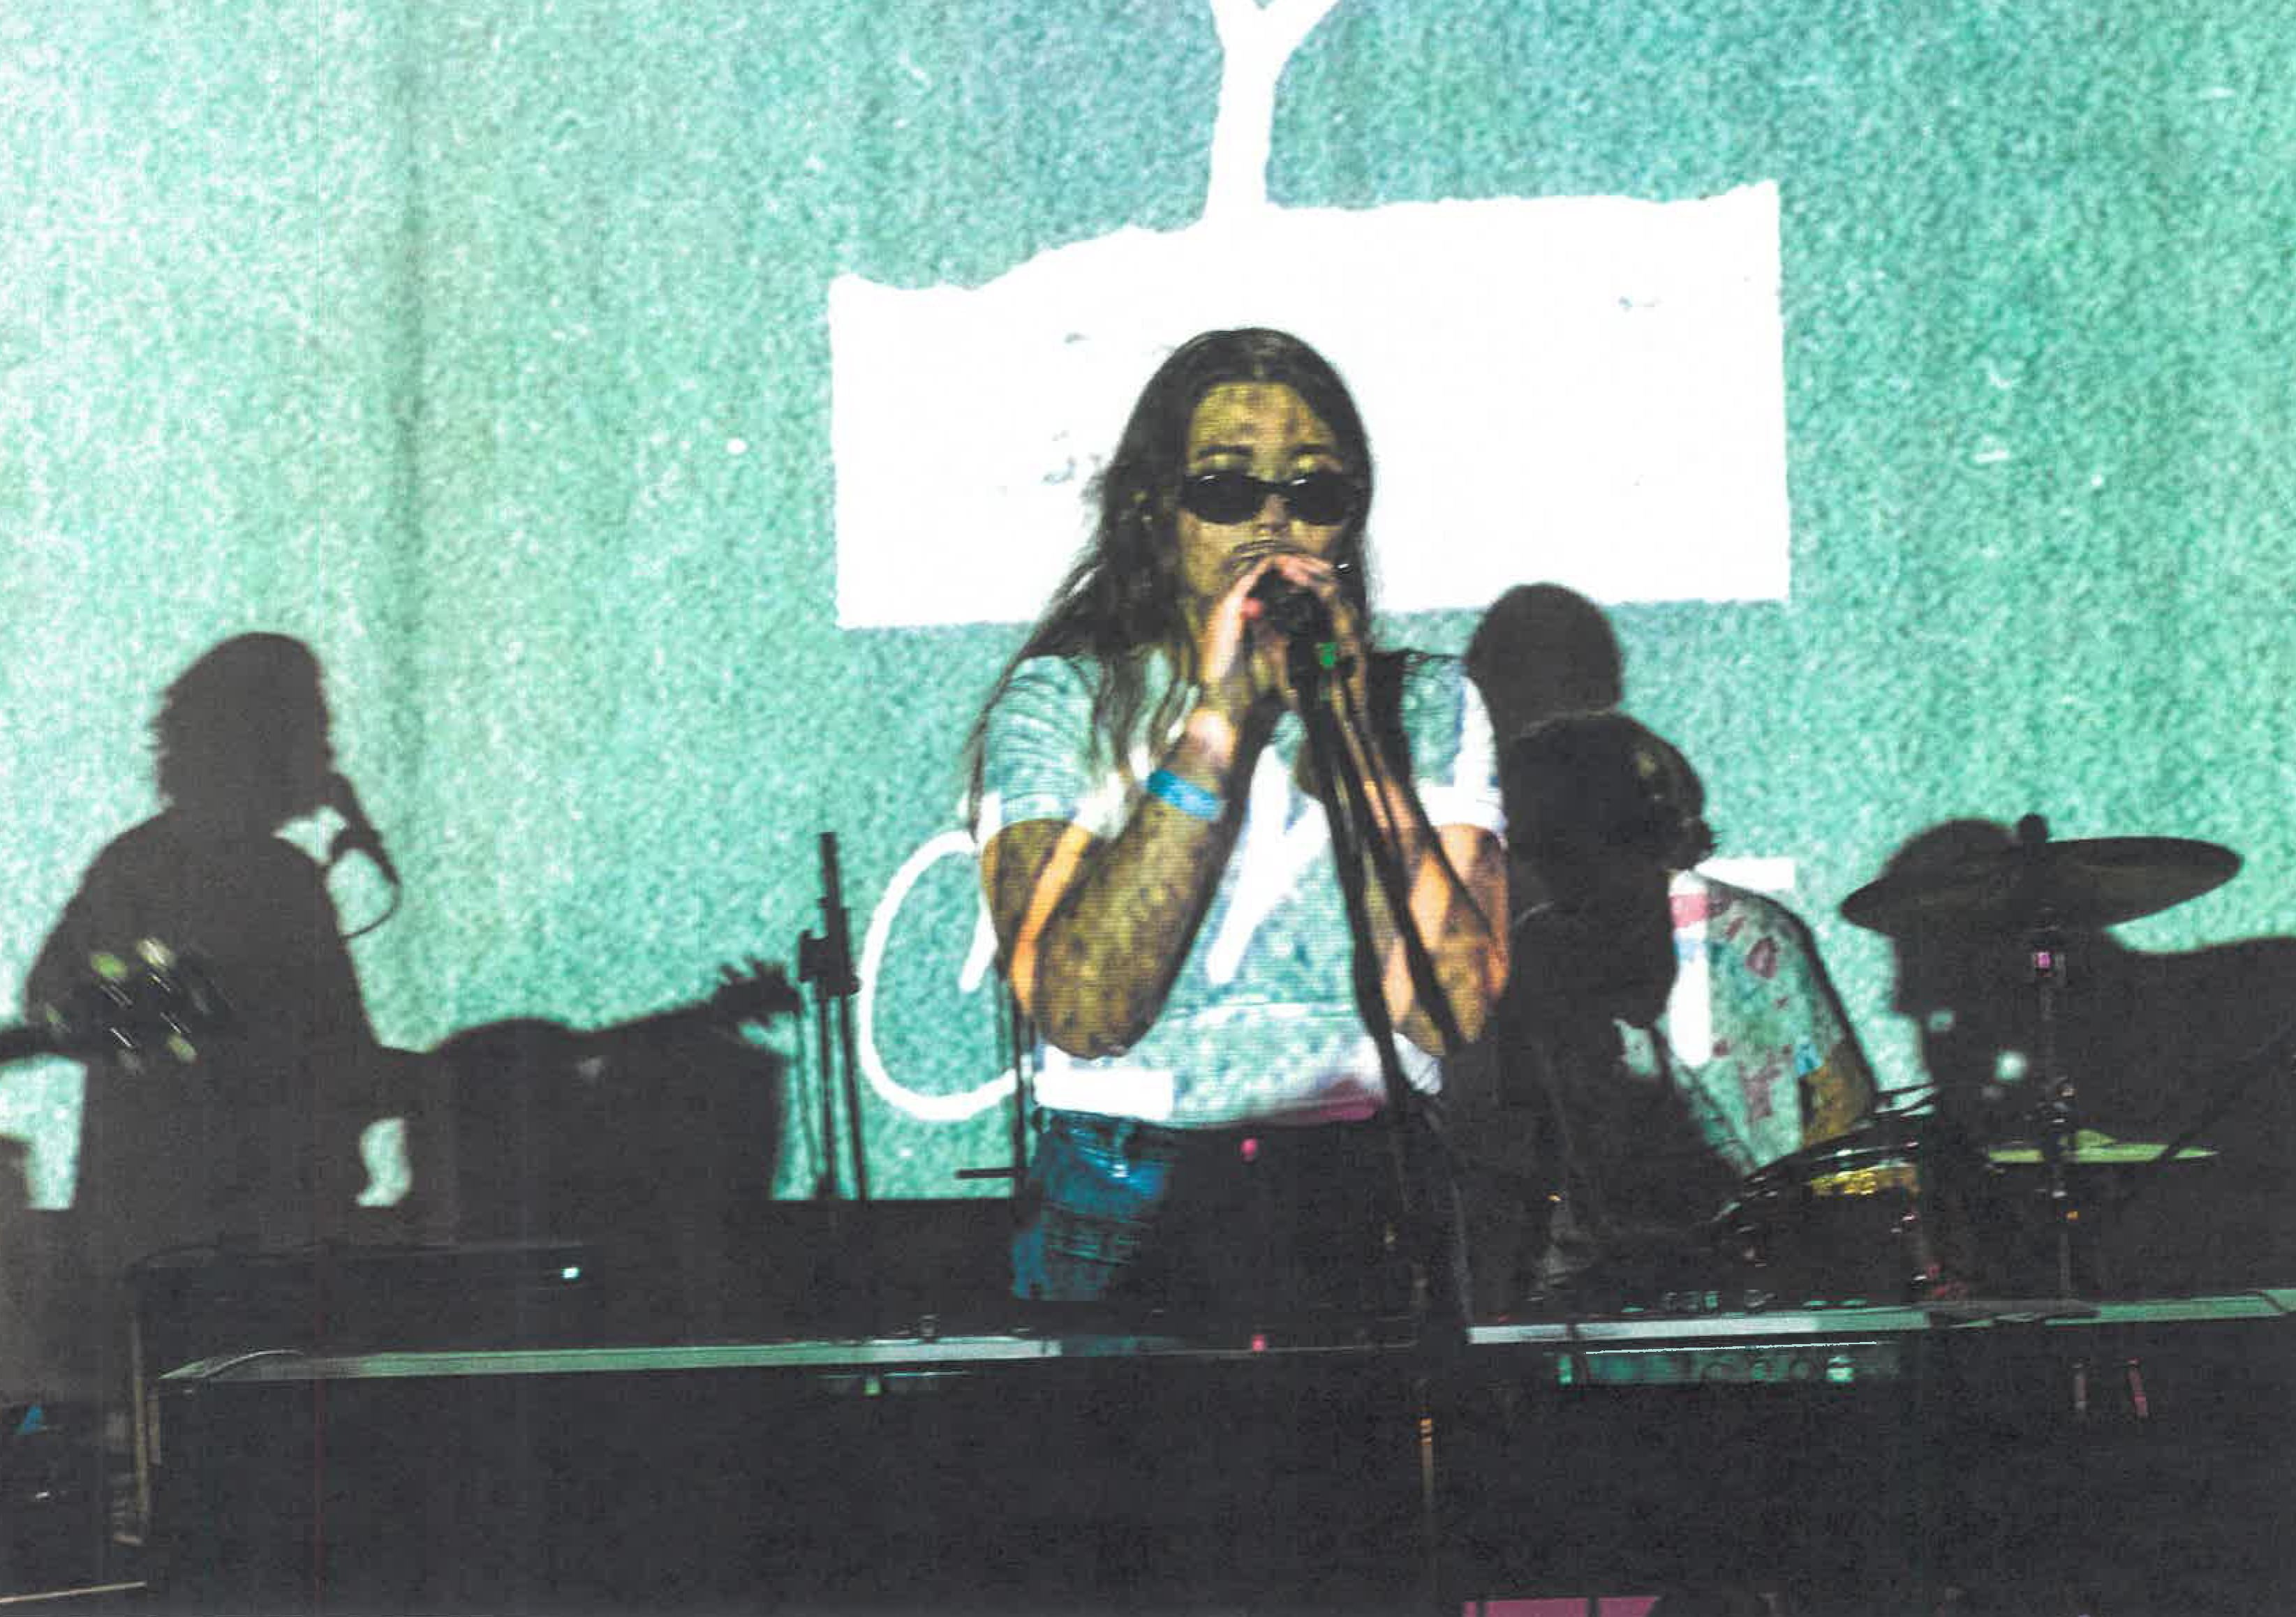 Ocelot yhtye soittaa. Bändin ylle heijastuu graafisia elementtejä videotykistä.